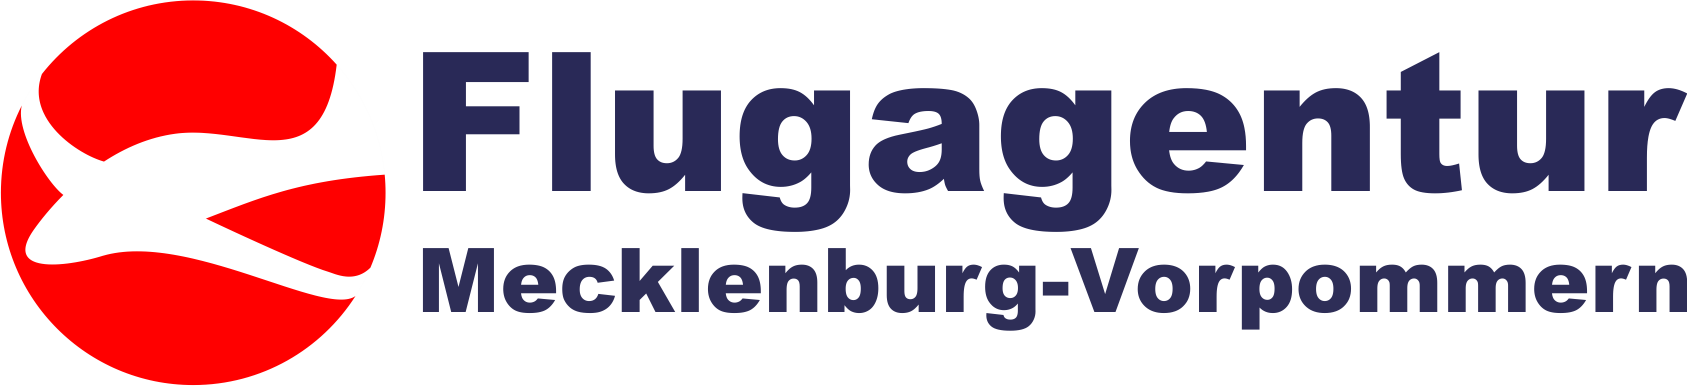 Flugagentur Mecklenburg-Vorpommern